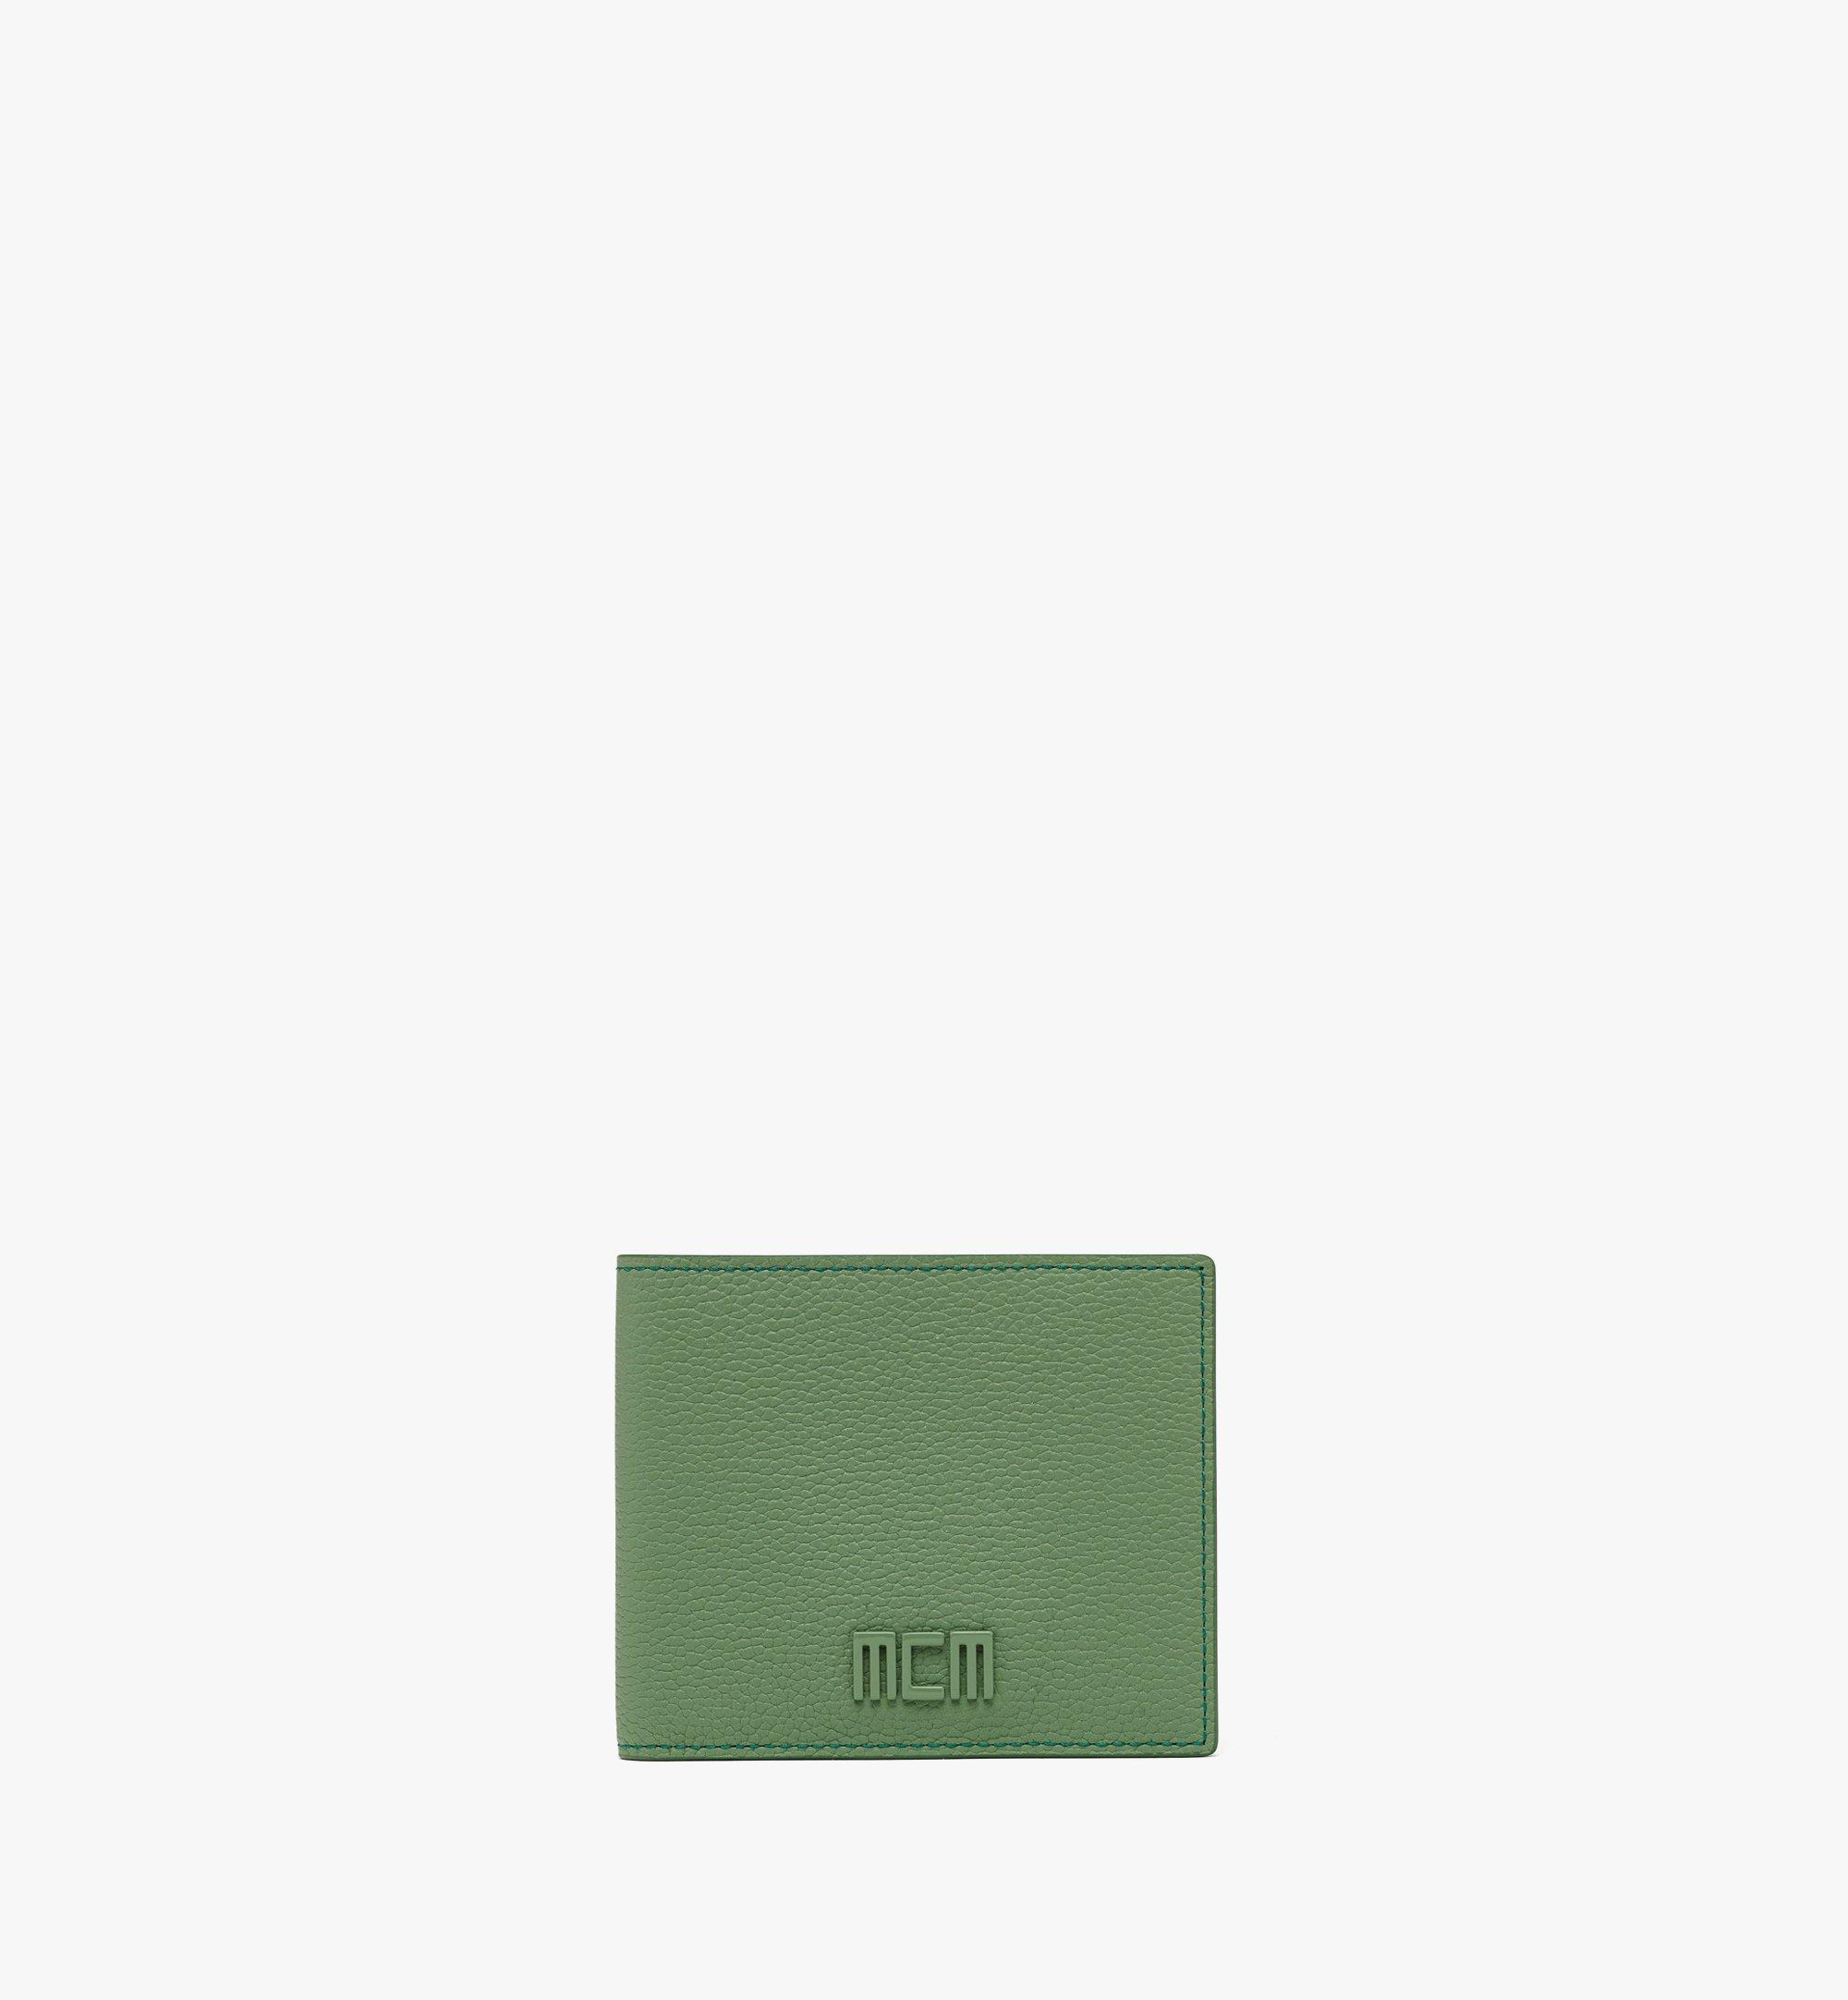 MCM MCM Tech gefaltetes Portemonnaie aus spanischem Leder Green MXSCATC01JZ001 Noch mehr sehen 1